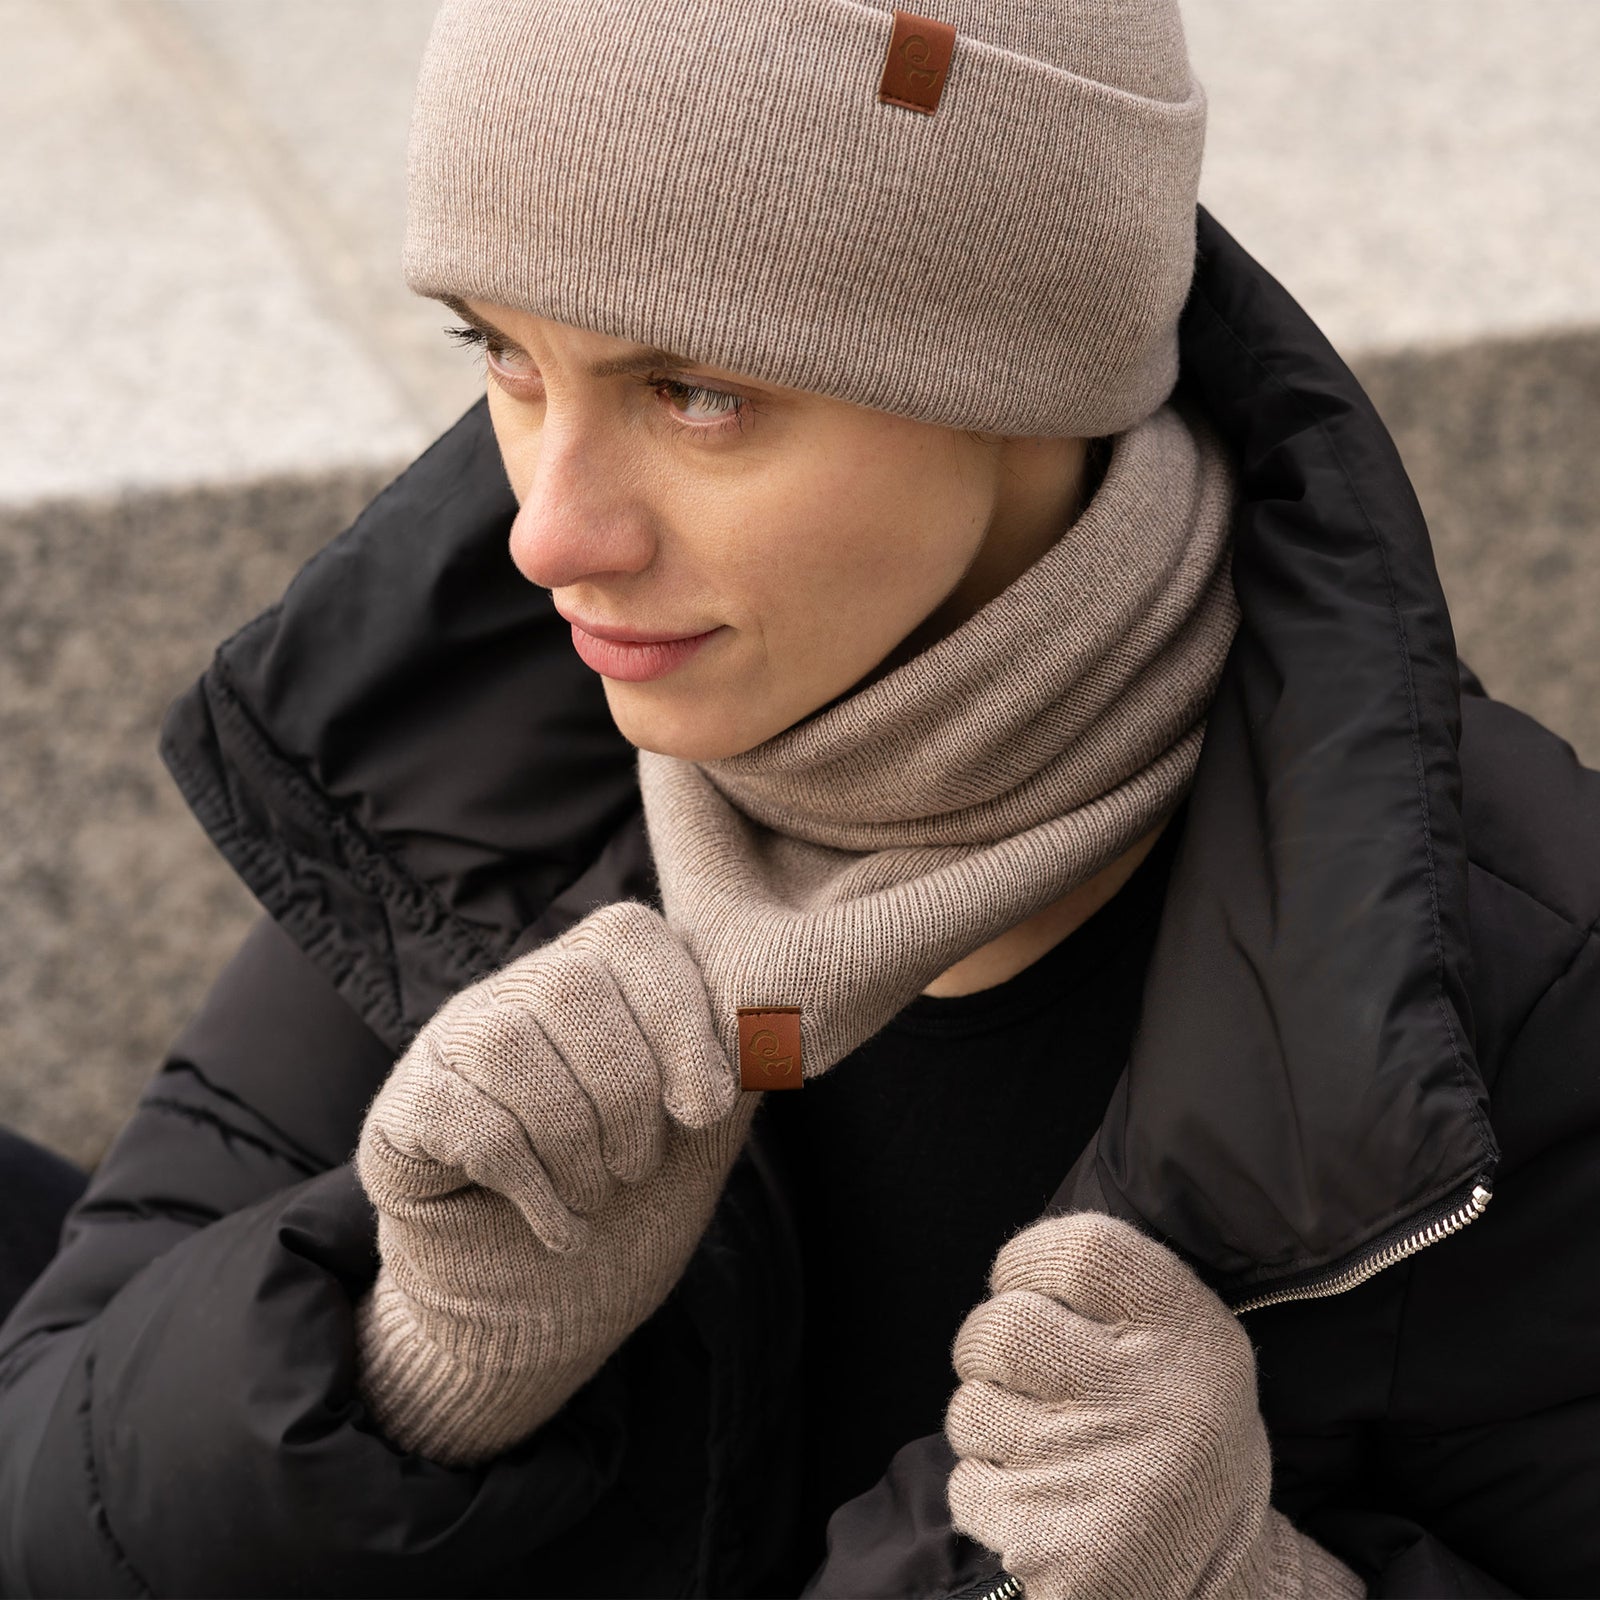 Ensemble tuque, cache-cou et gants||Gloves, beanie and gaiter tripack